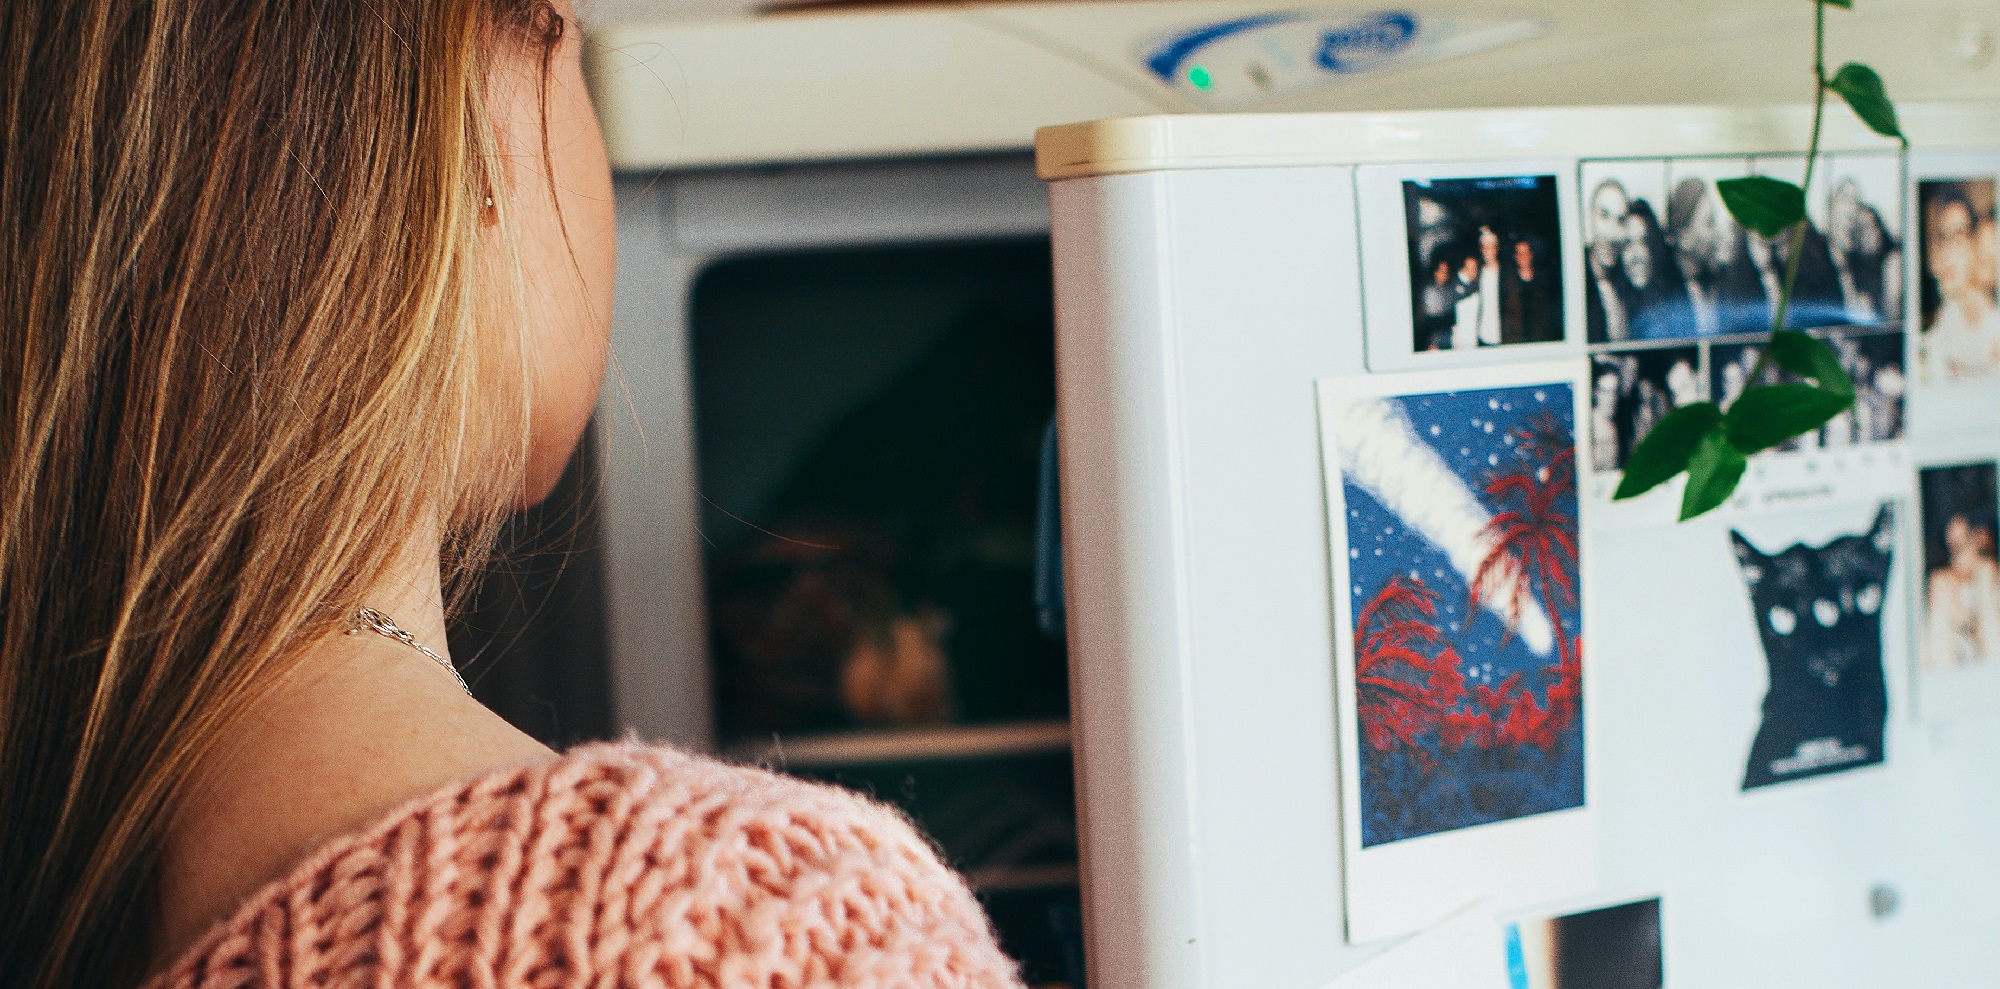 Nutricionista detalló 6 cambios que puedes hacer en tu despensa y refrigerador para comer más sano